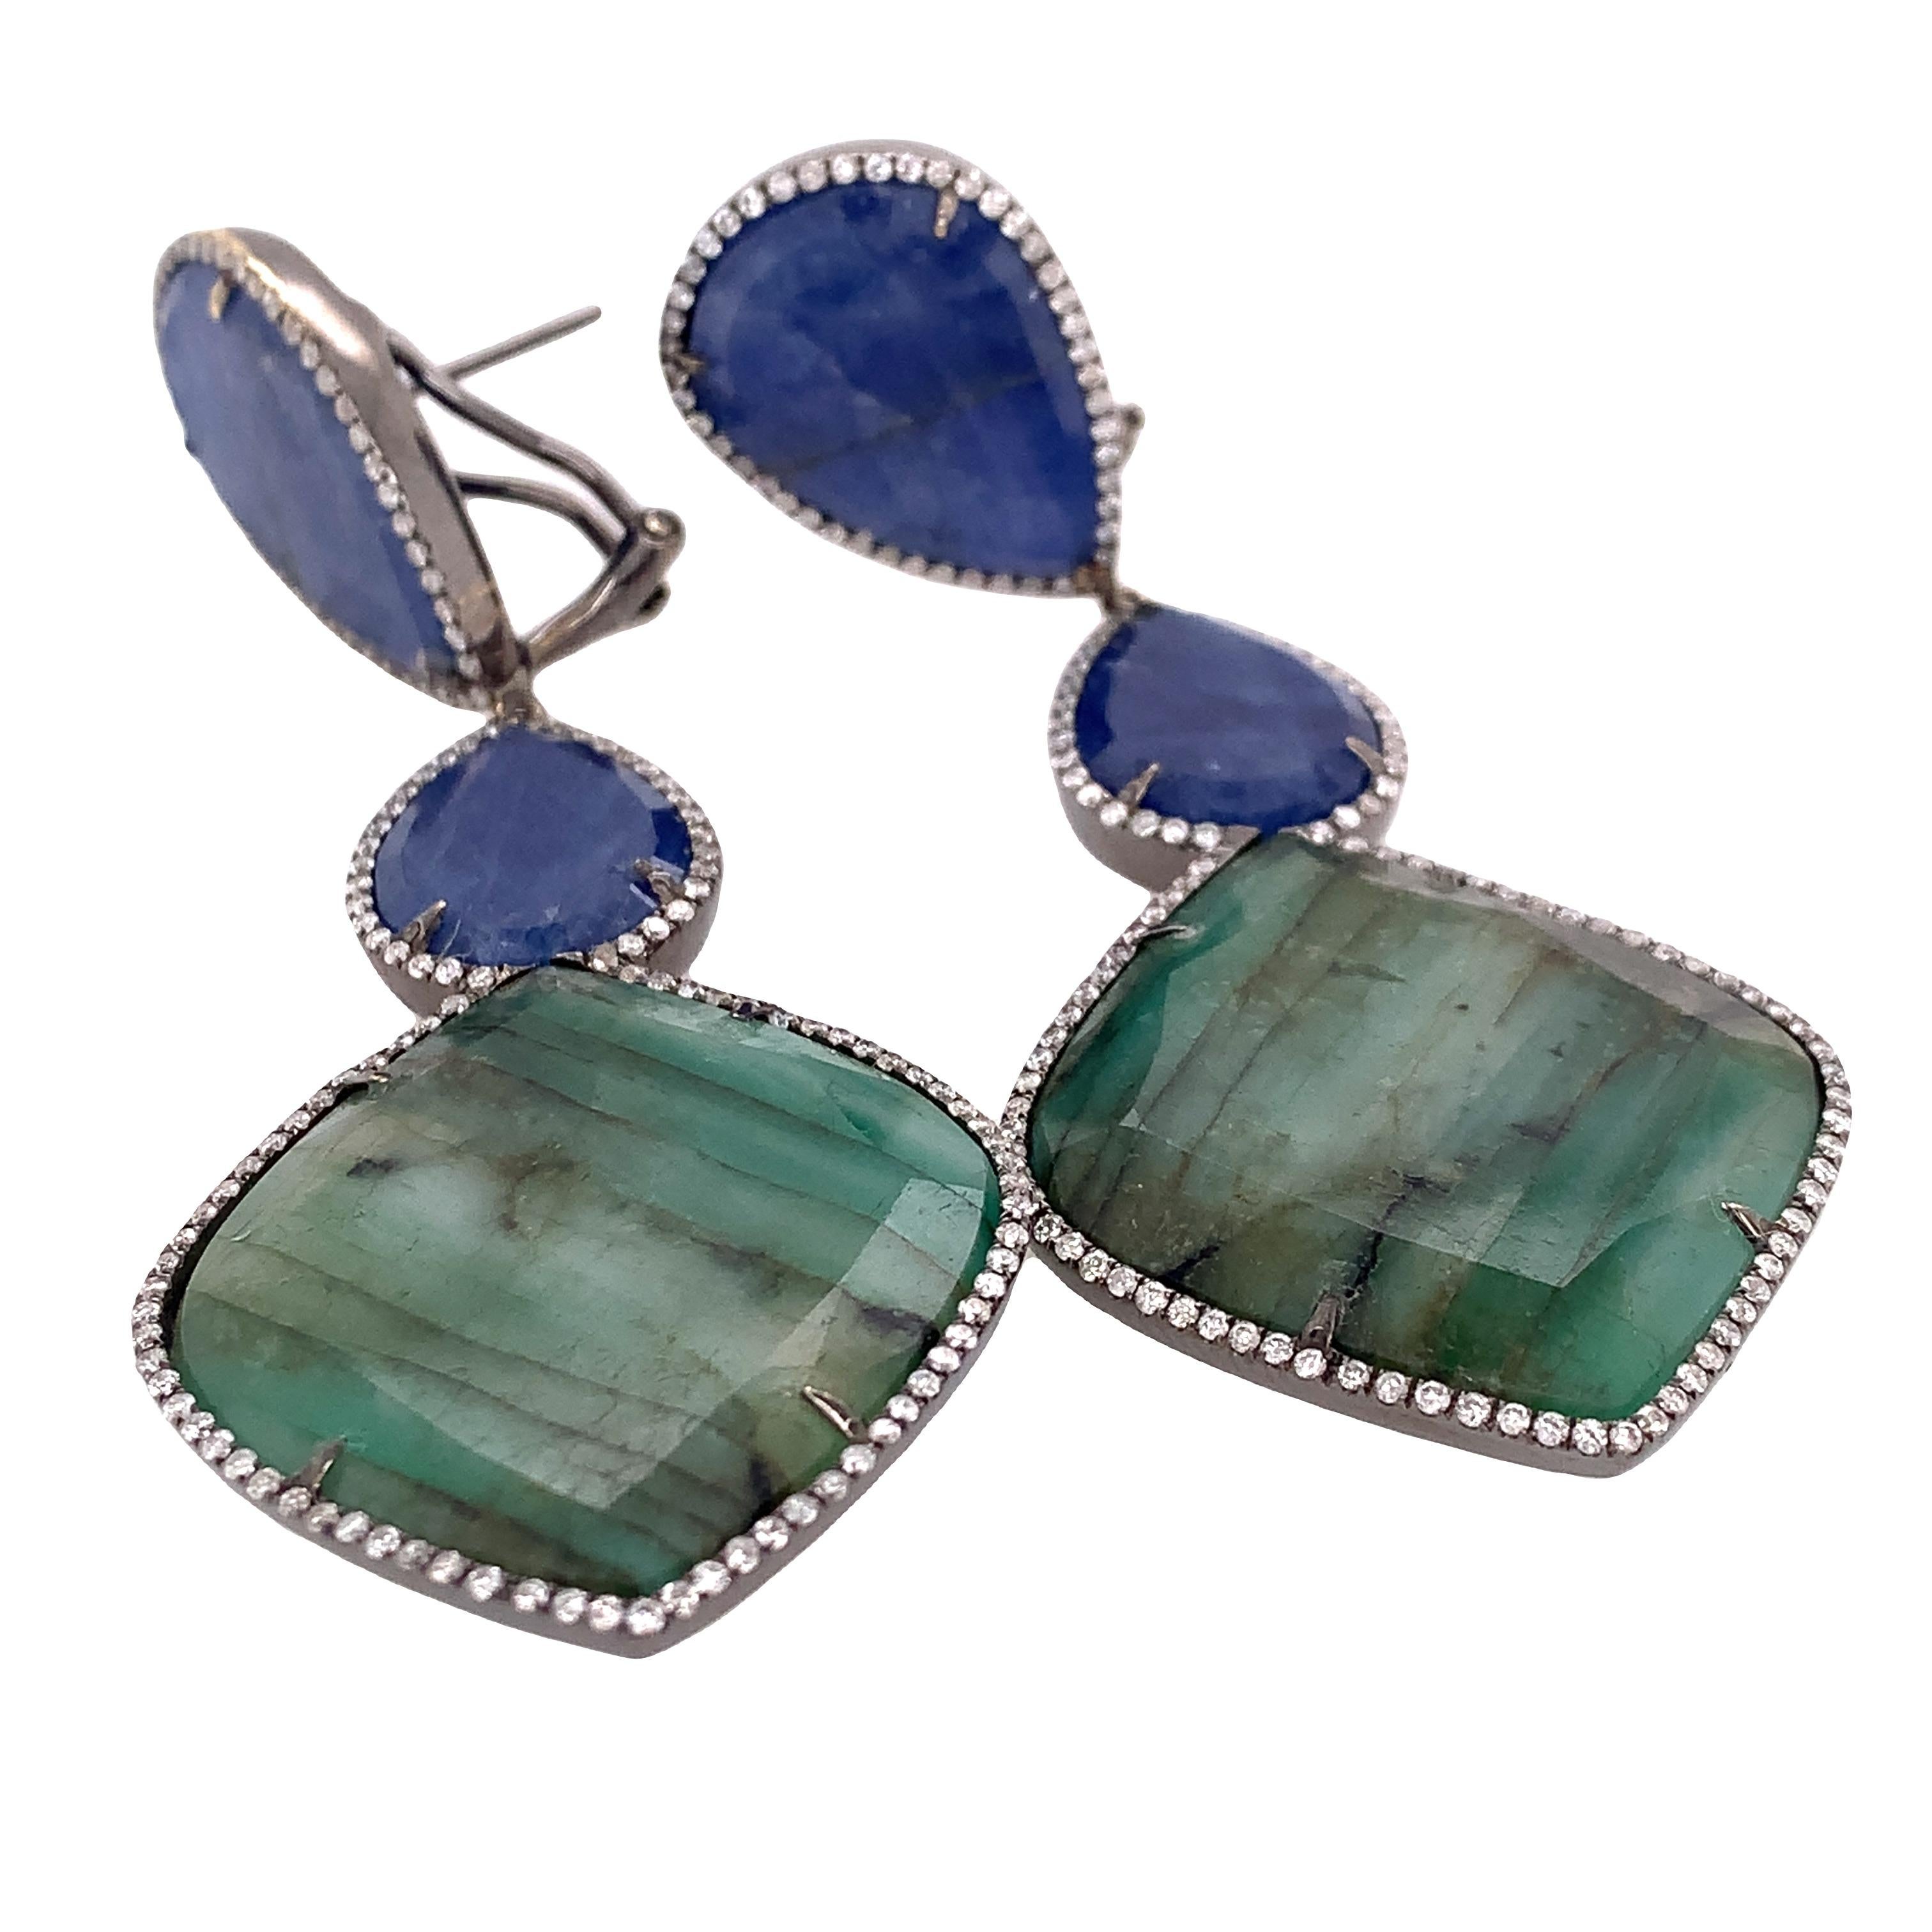 Lillipad Kollektion

Ein blauer Saphir und ein Smaragd werden von einem Diamanten umhüllt und sind als Ohrringe in 18 Karat Schwarzgold gefasst. Alle Edelsteine sind natürliche Scheiben.

Blauer Saphir: 29,33ct Gesamtgewicht.
Smaragd: 30.92ct